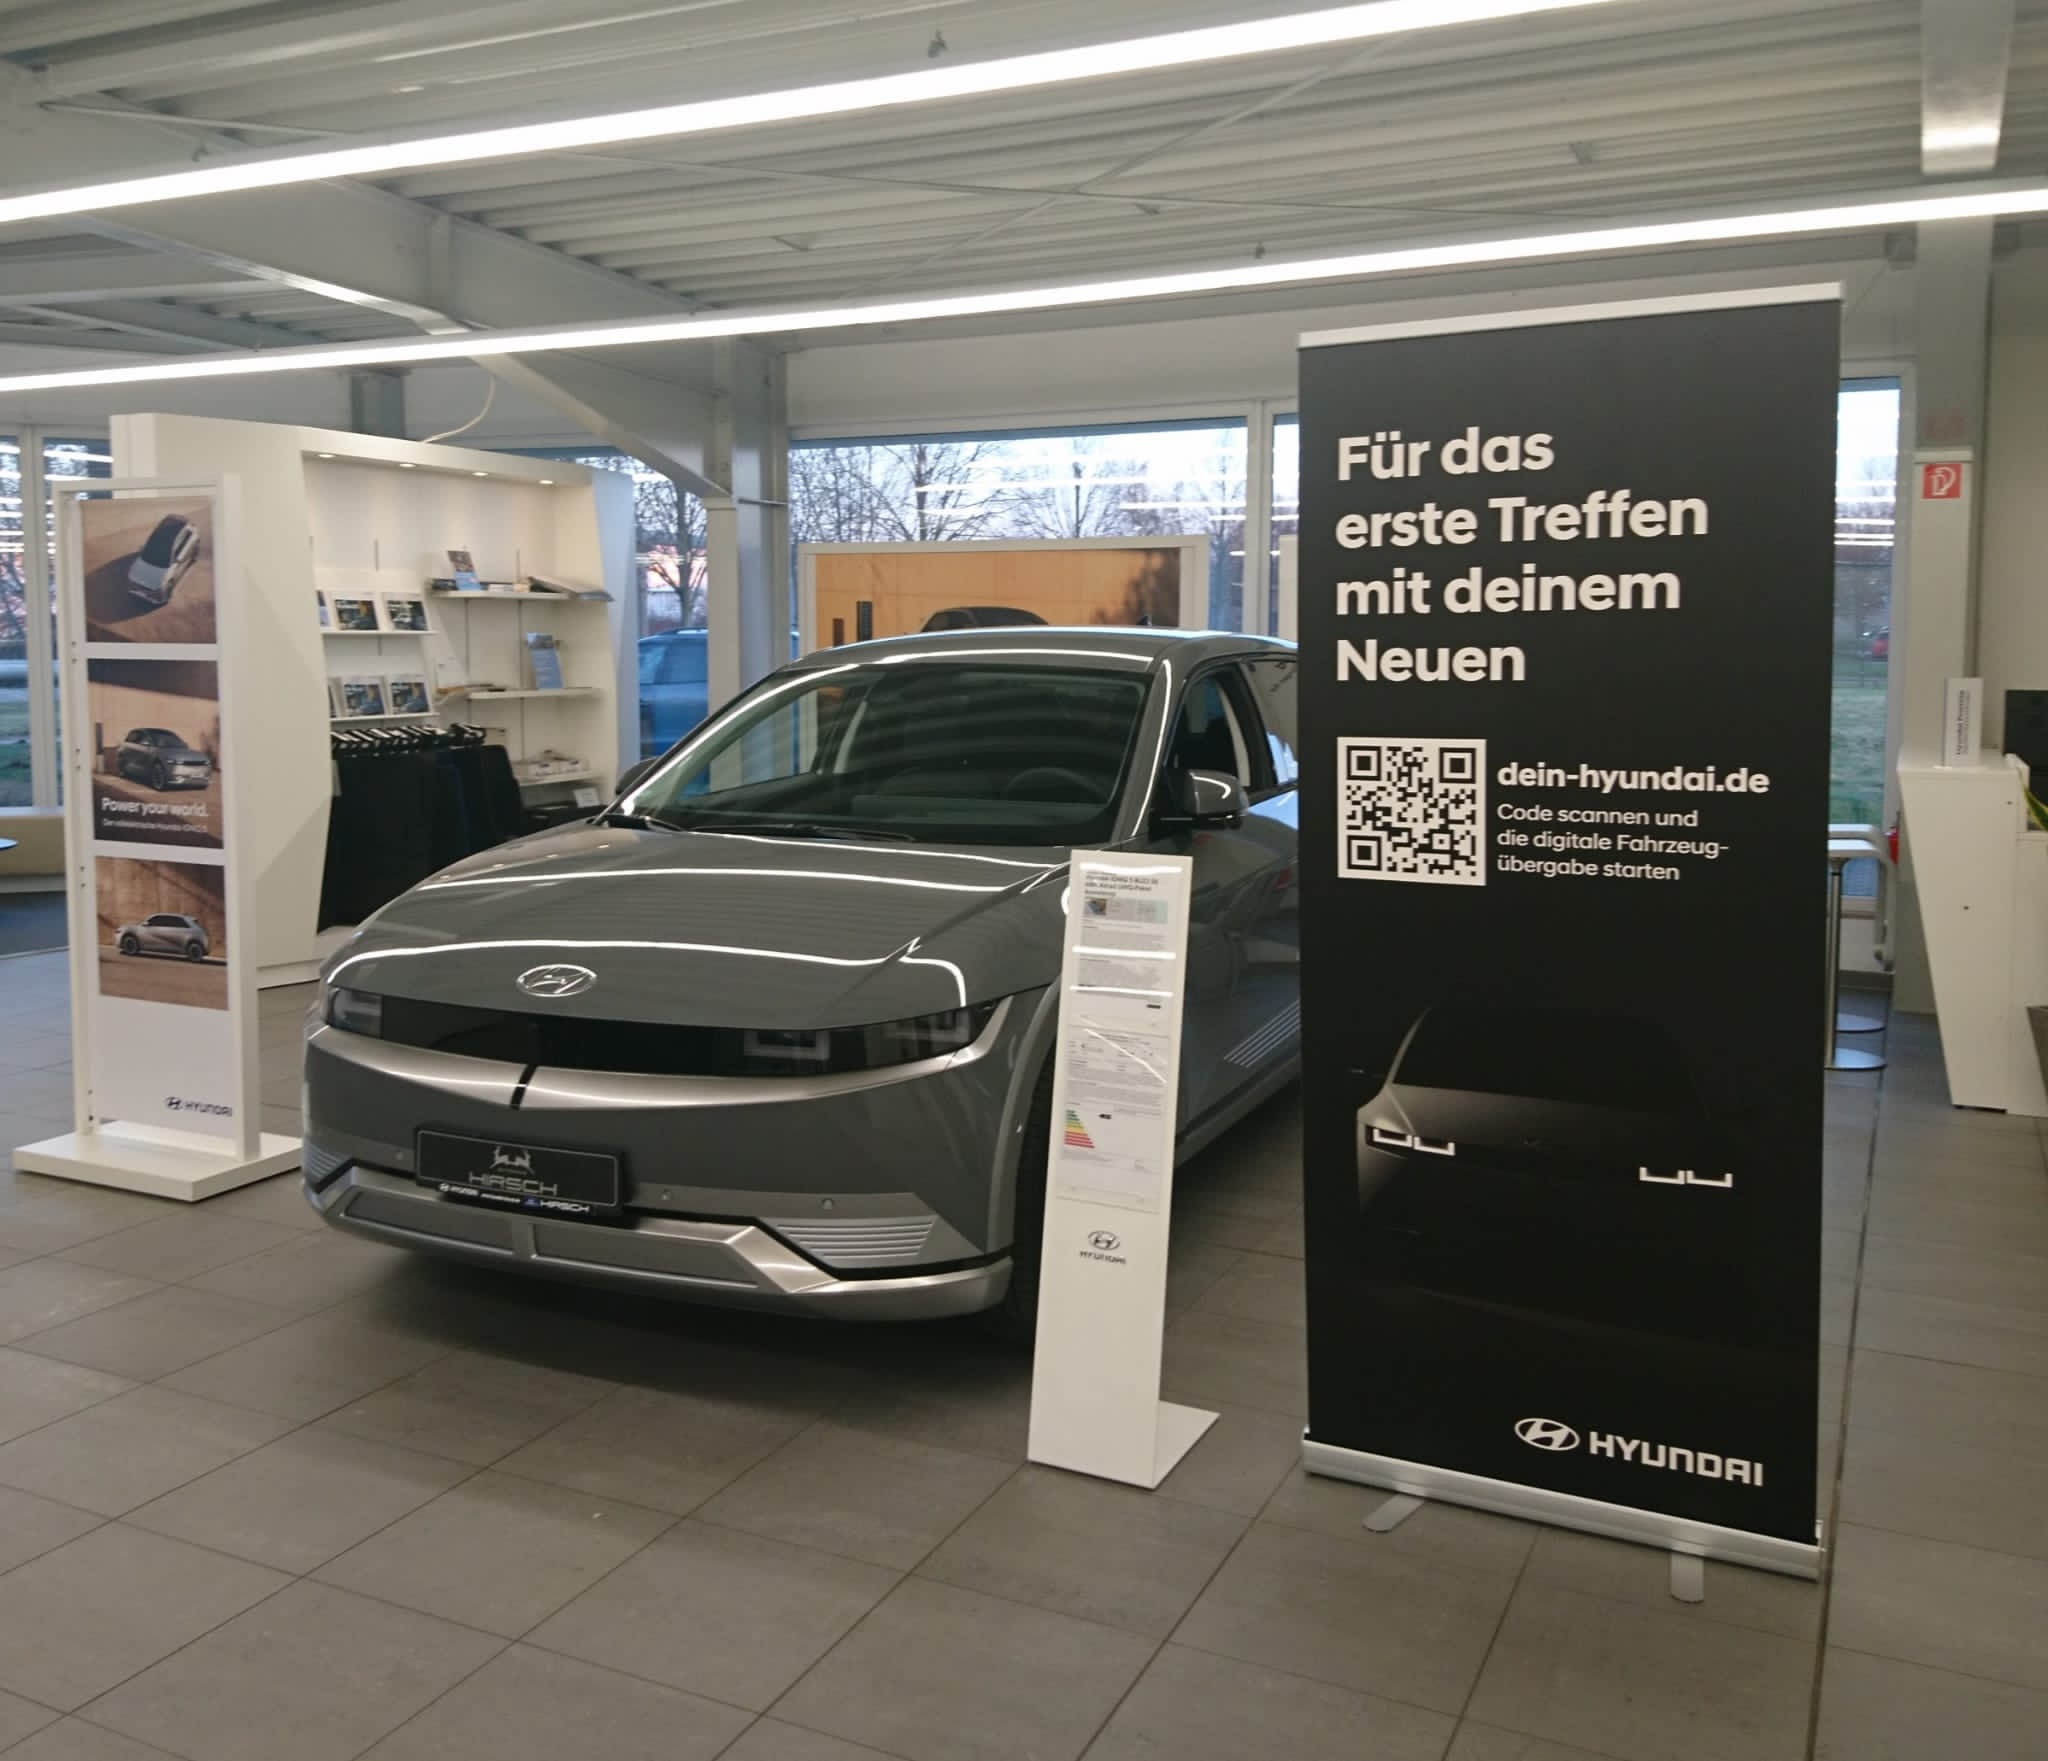 Hyundai Vertragshändler Hirsch in Borna Innenaufnahme Neuwagen Hyundai